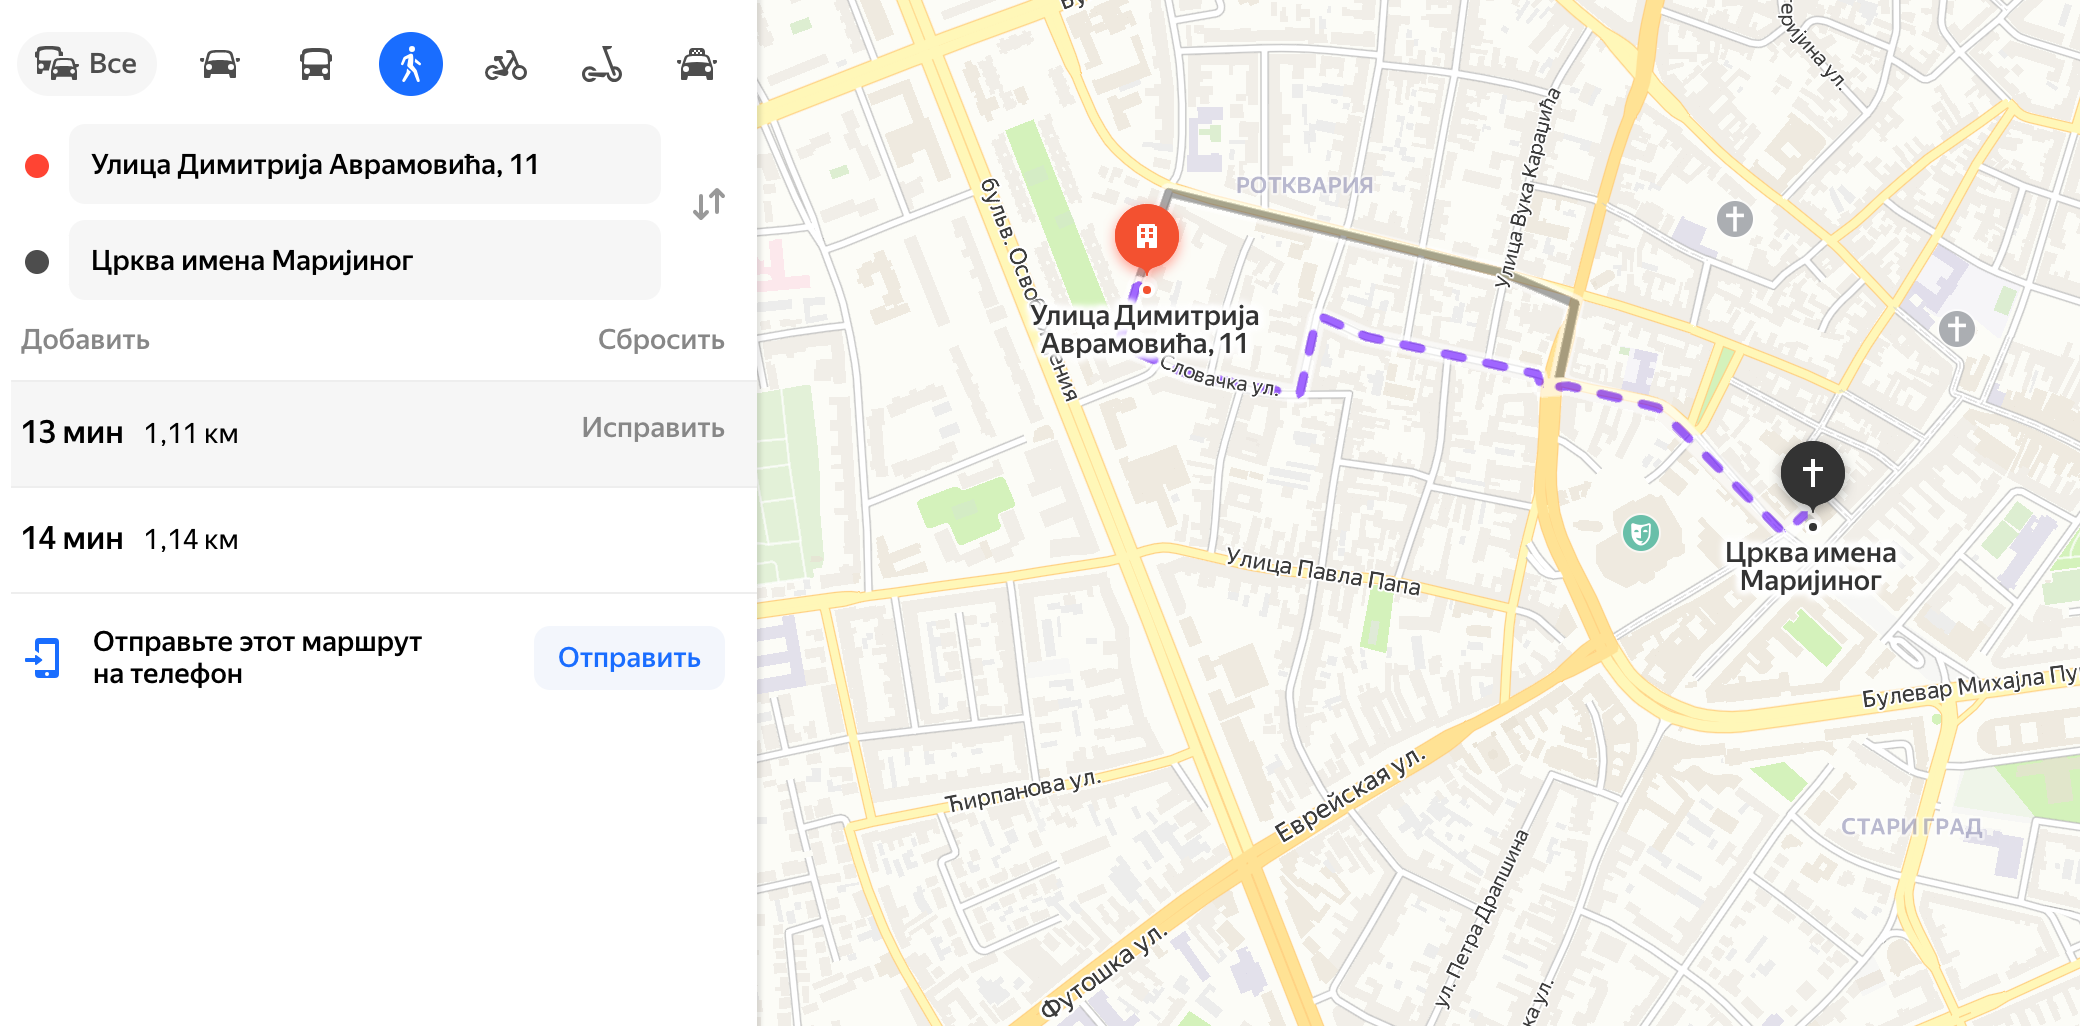 Чтобы определить желаемый радиус поиска квартиры, я установила точку на карте в центре Старого города и искала варианты в радиусе 30 минут ходьбы. Источник: yandex.ru